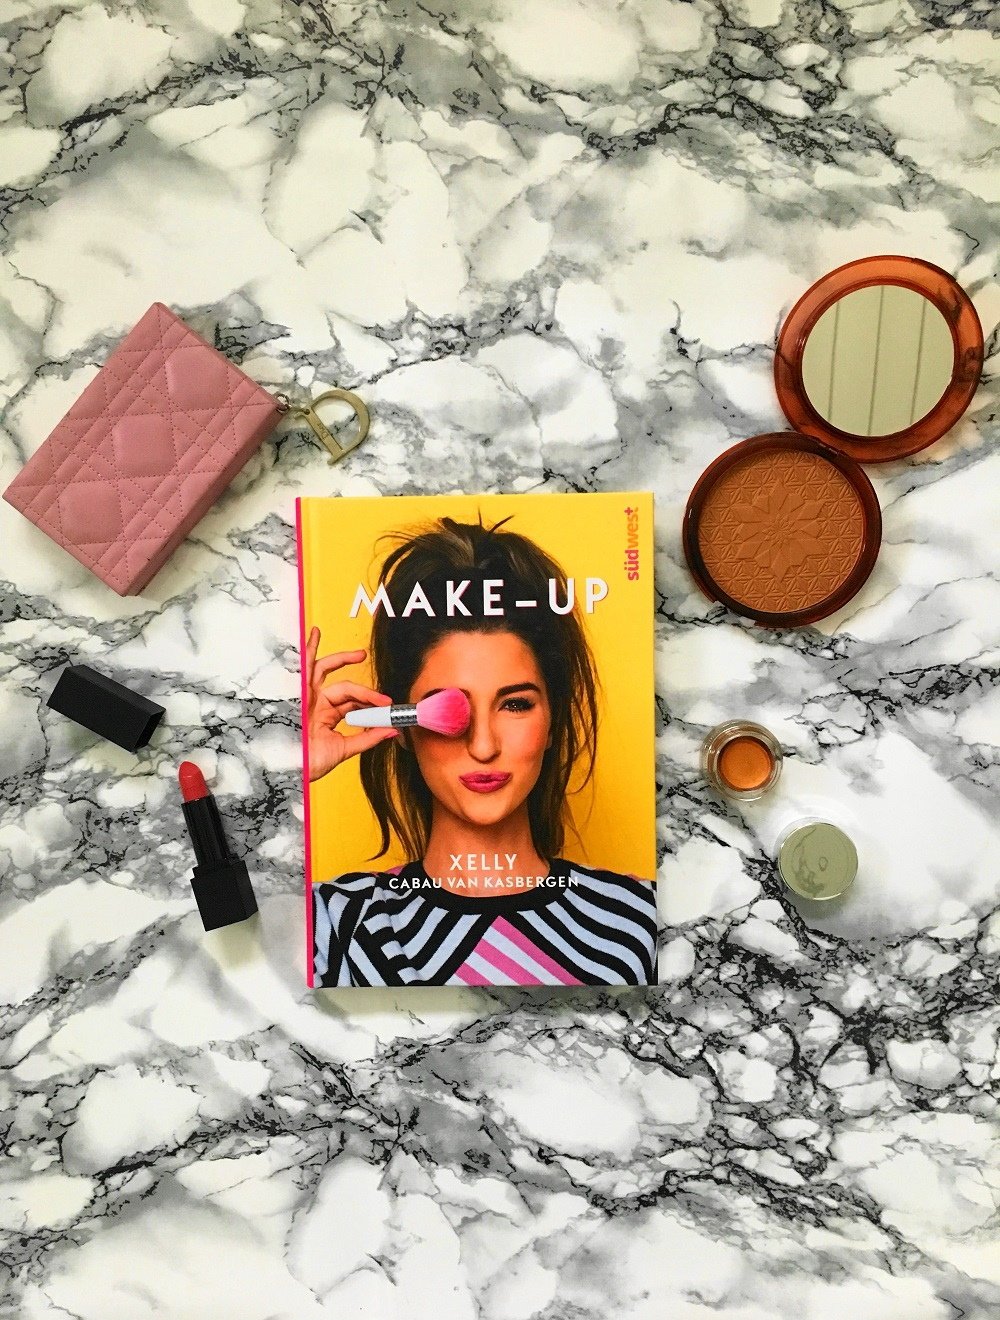 Buch "Make up" vom MUA Xelly Cabau Van Kasbergen